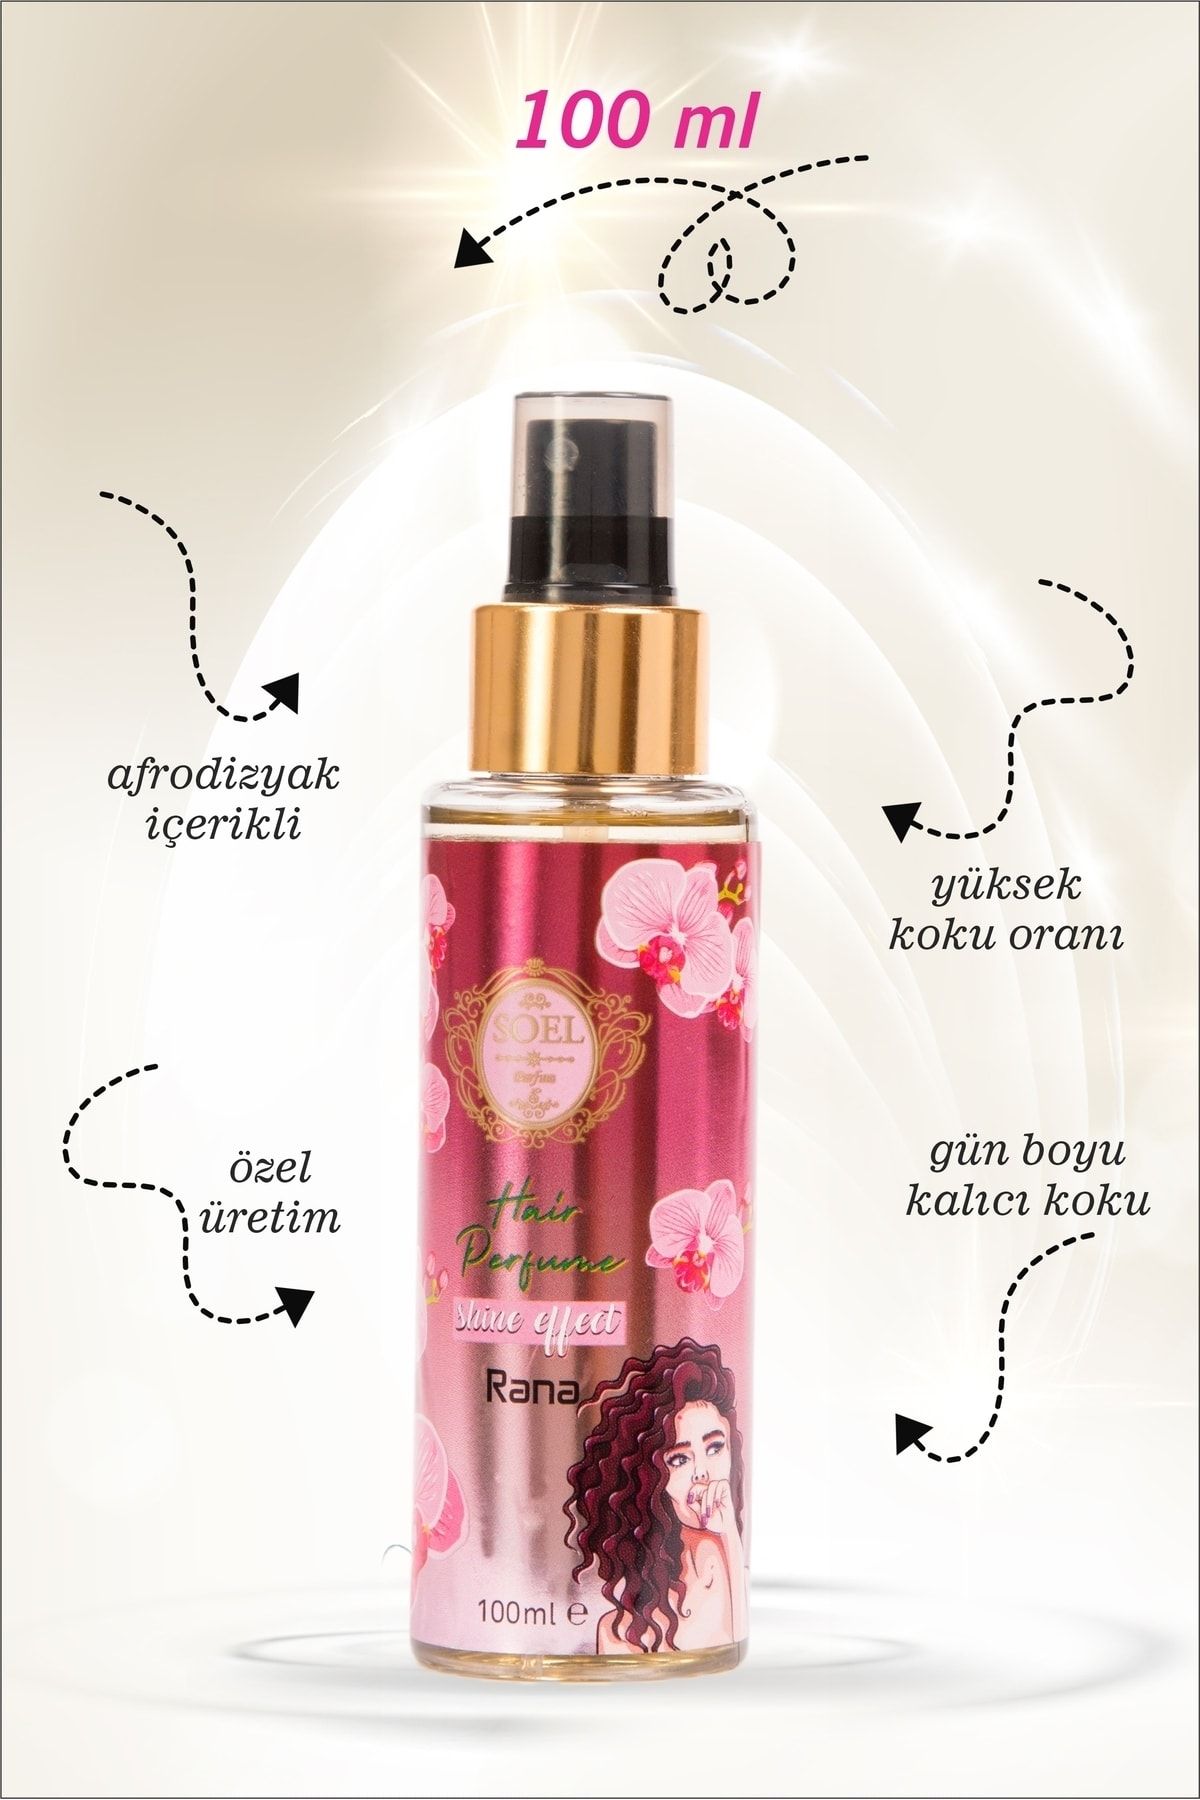 Soel Parfüm Saç Bakım Parfümü- Rana Parfüm Kokulu 100 Ml